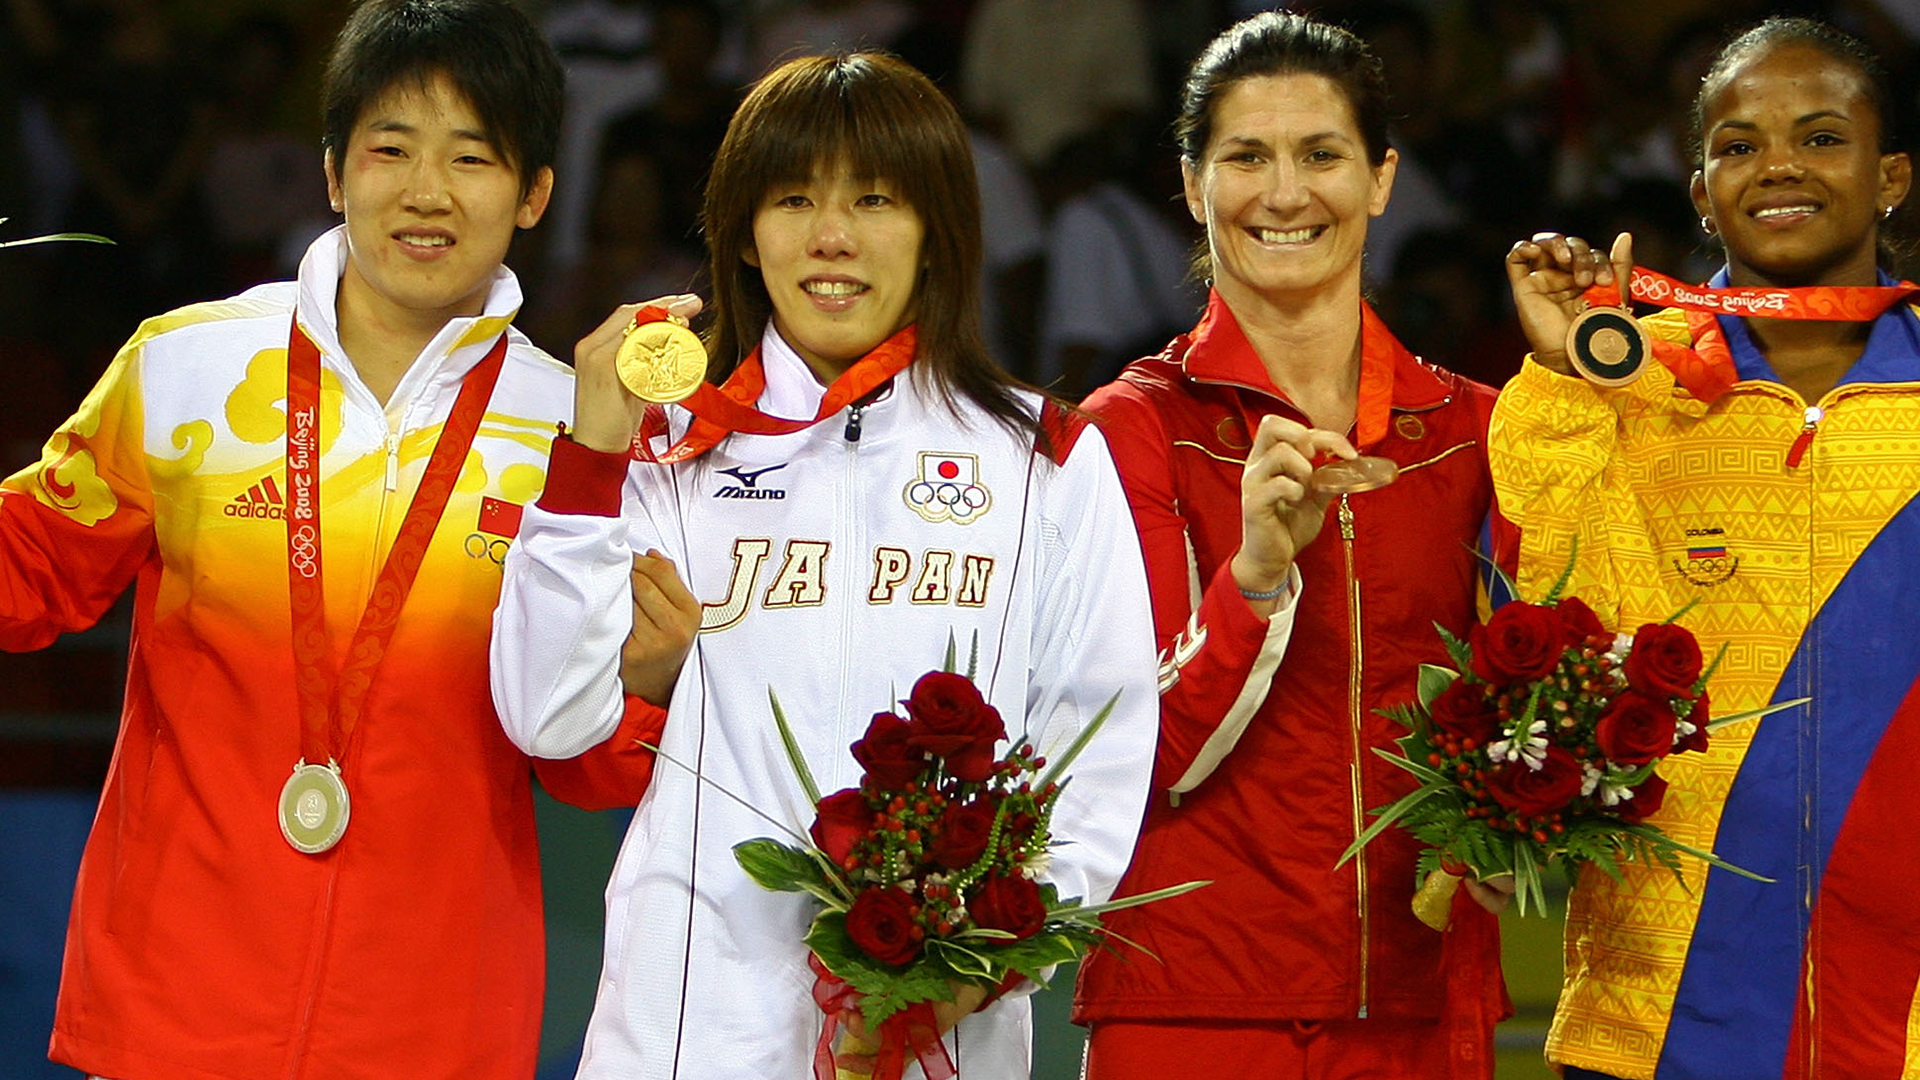 【オリンピック名場面】北京五輪(2008年)レスリング女子フリースタイル55kg級で、吉田沙保里が五輪2連覇達成した瞬間を振り返る